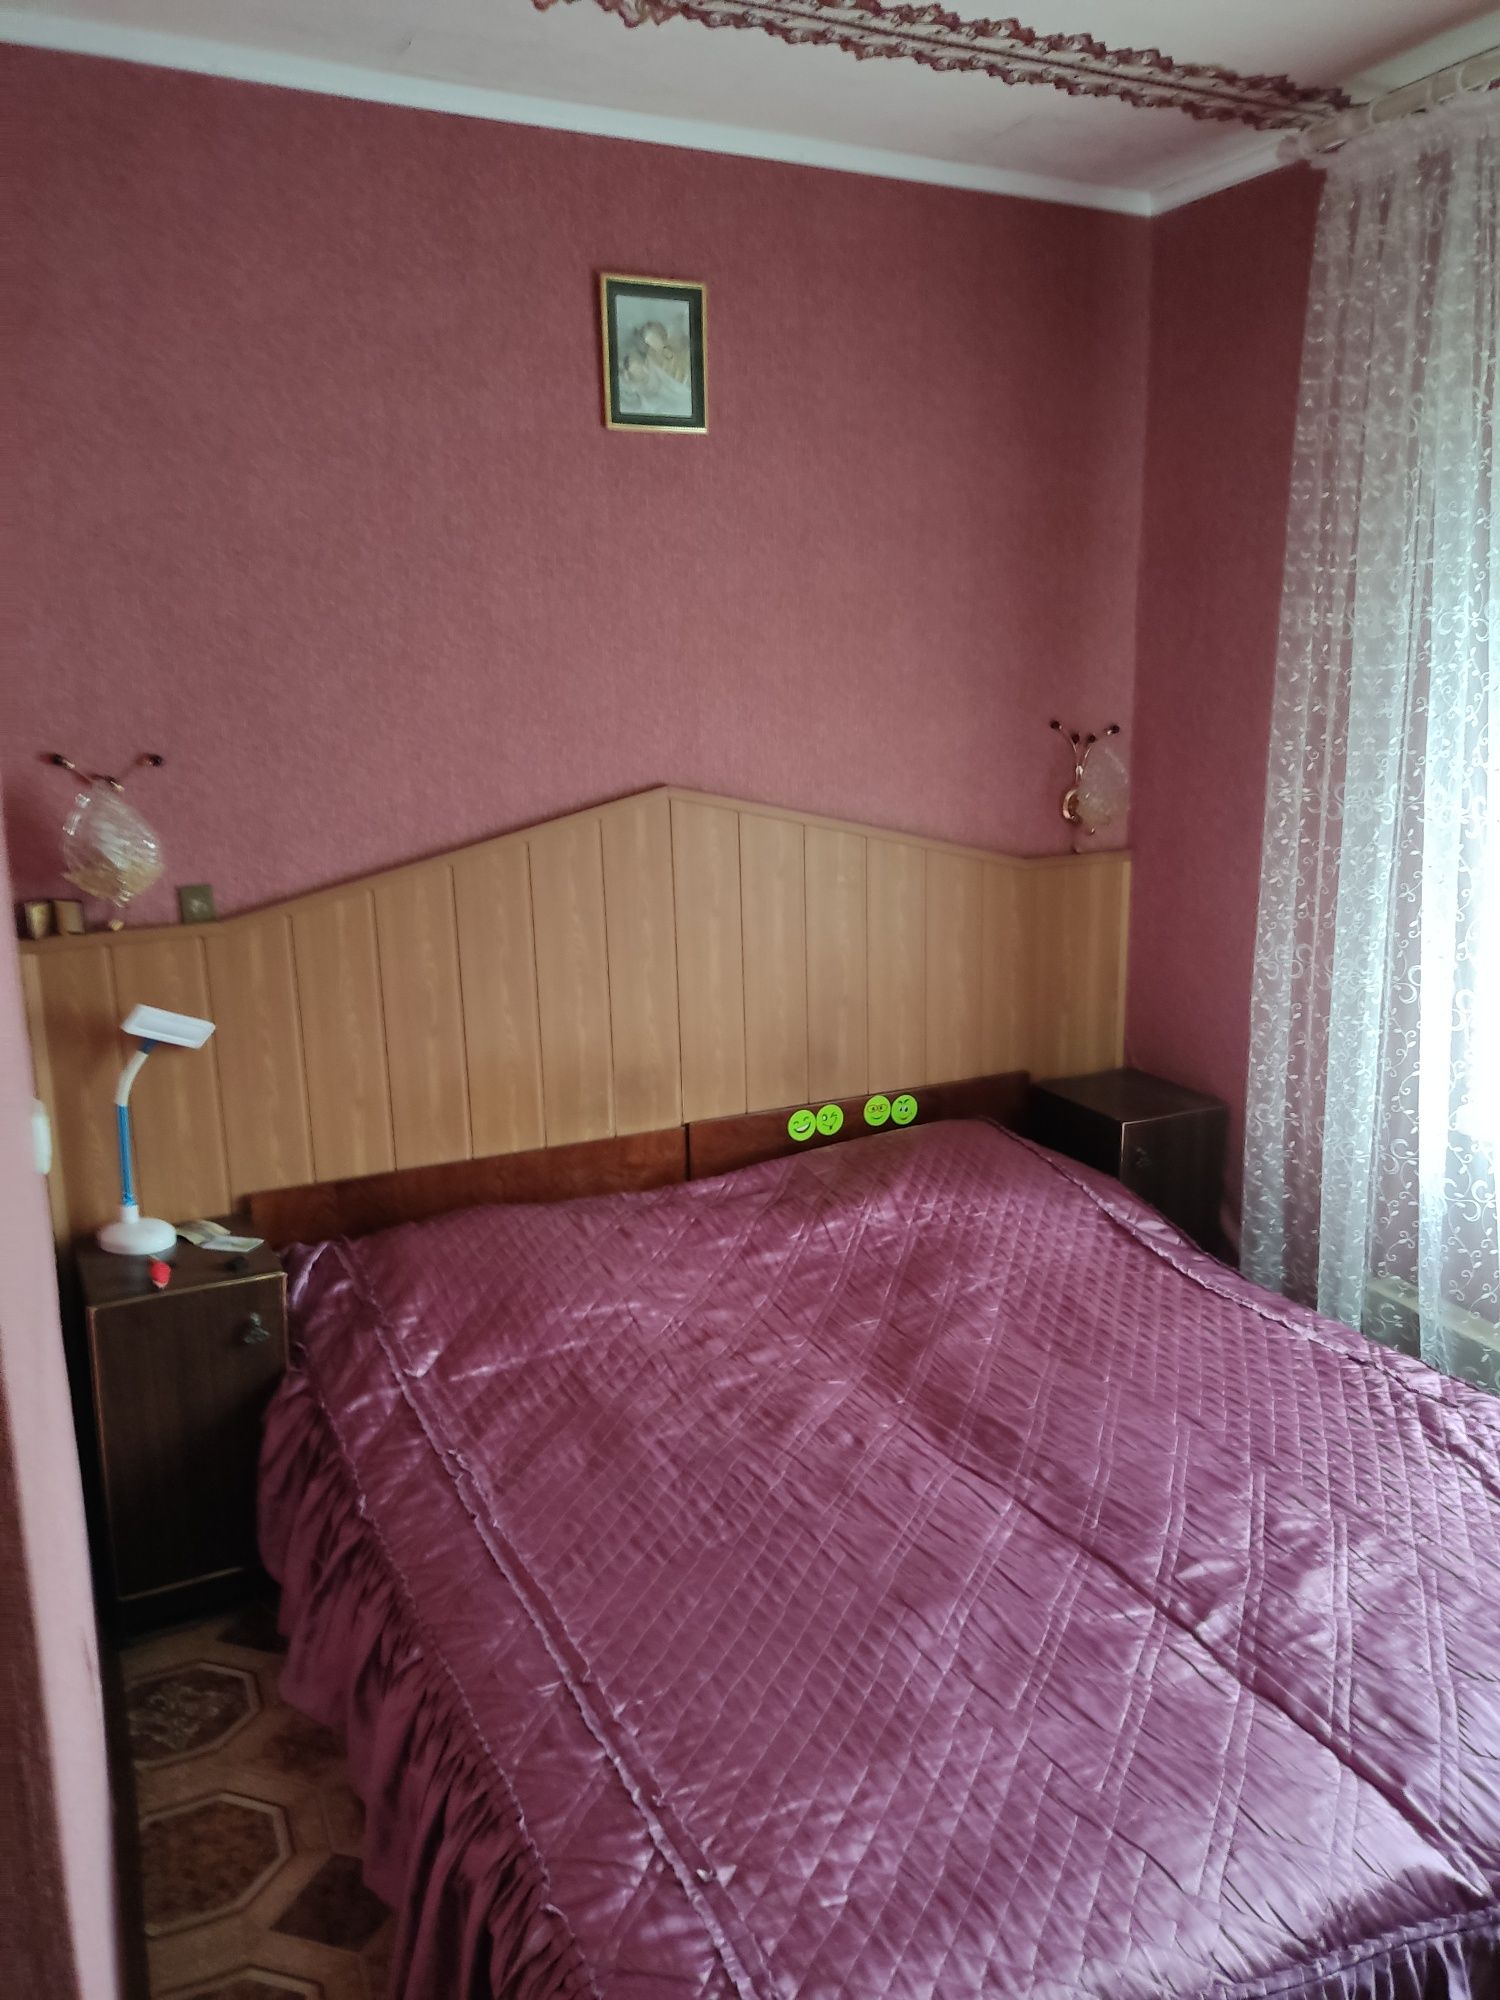 Продам квартиру смт Панютине рн северний 3 кімнатна  65,5 кв.м